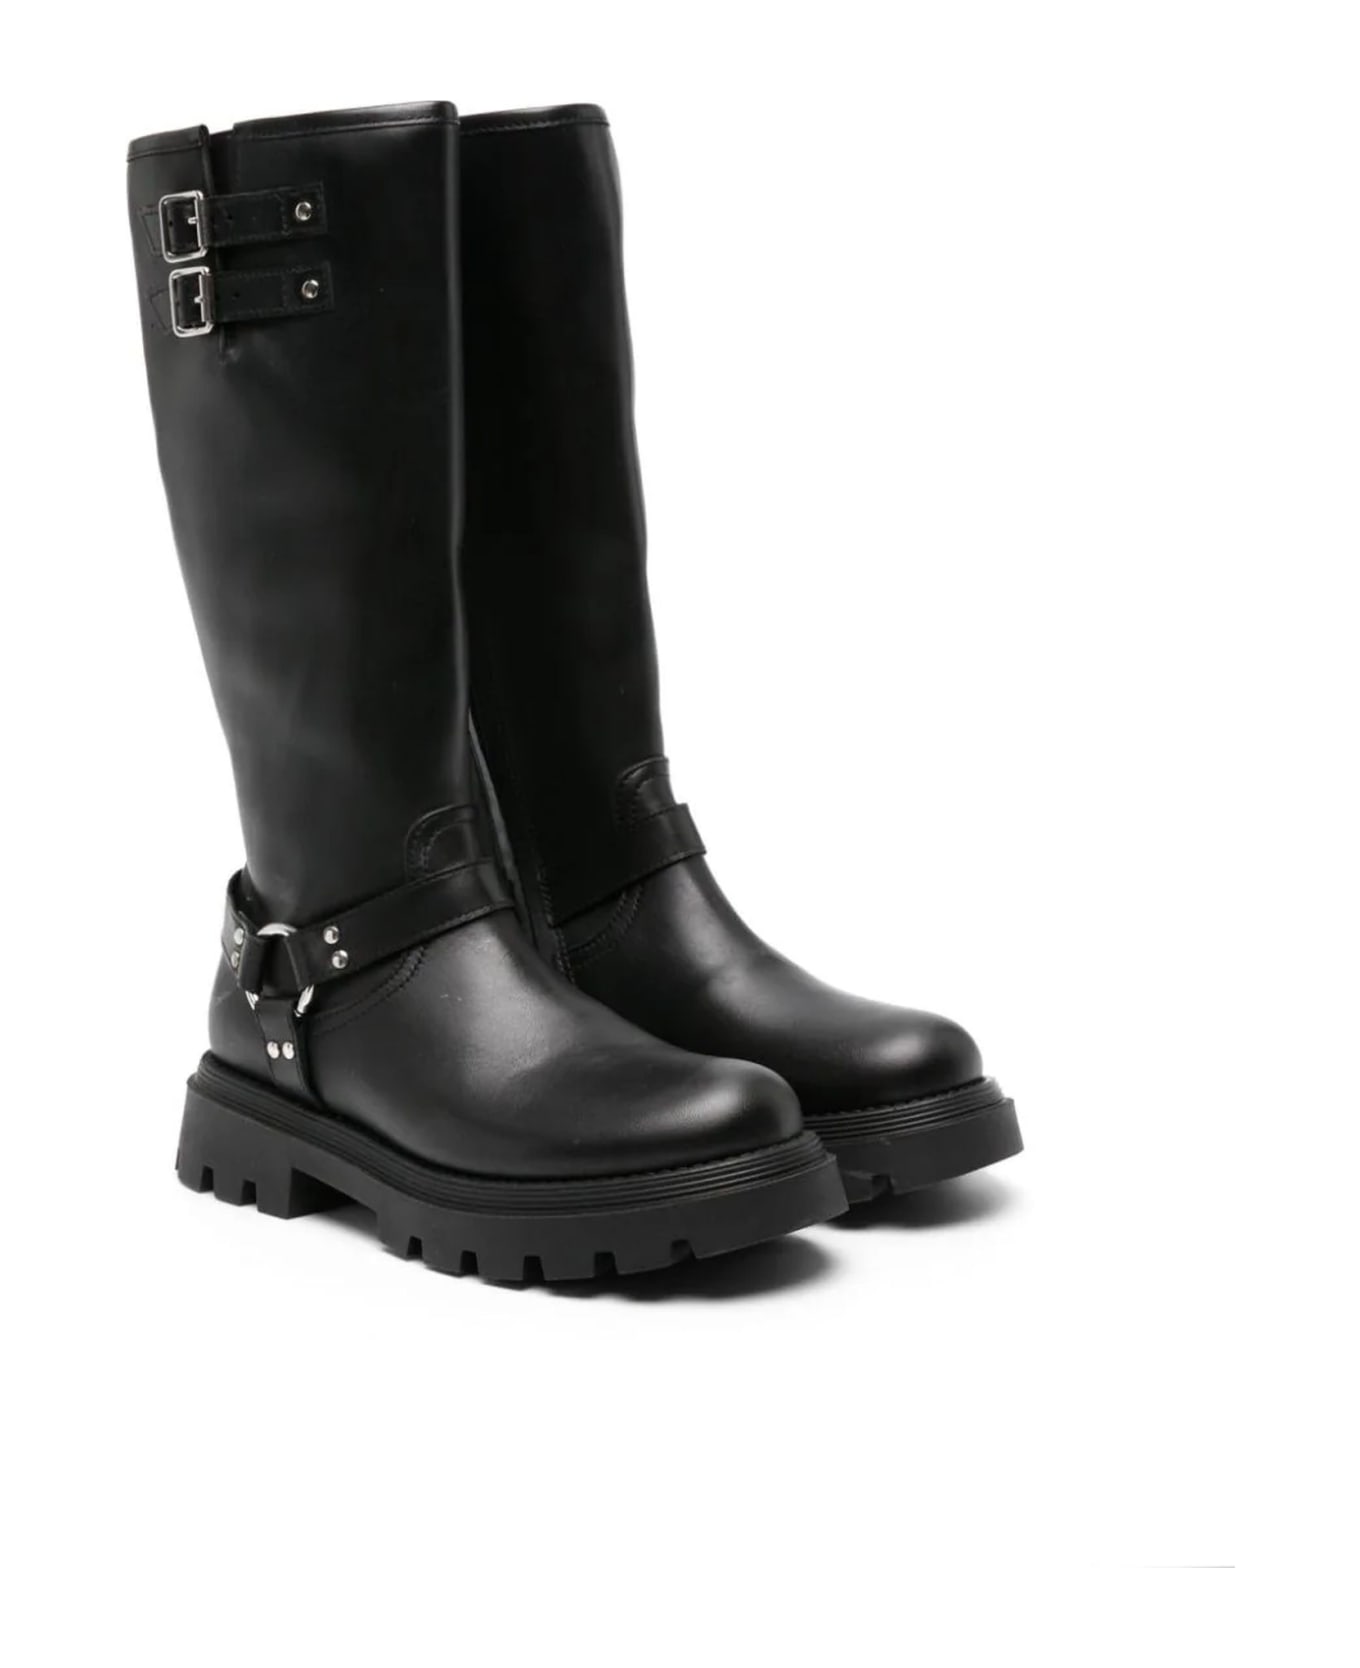 Gallucci Boots Black - Black